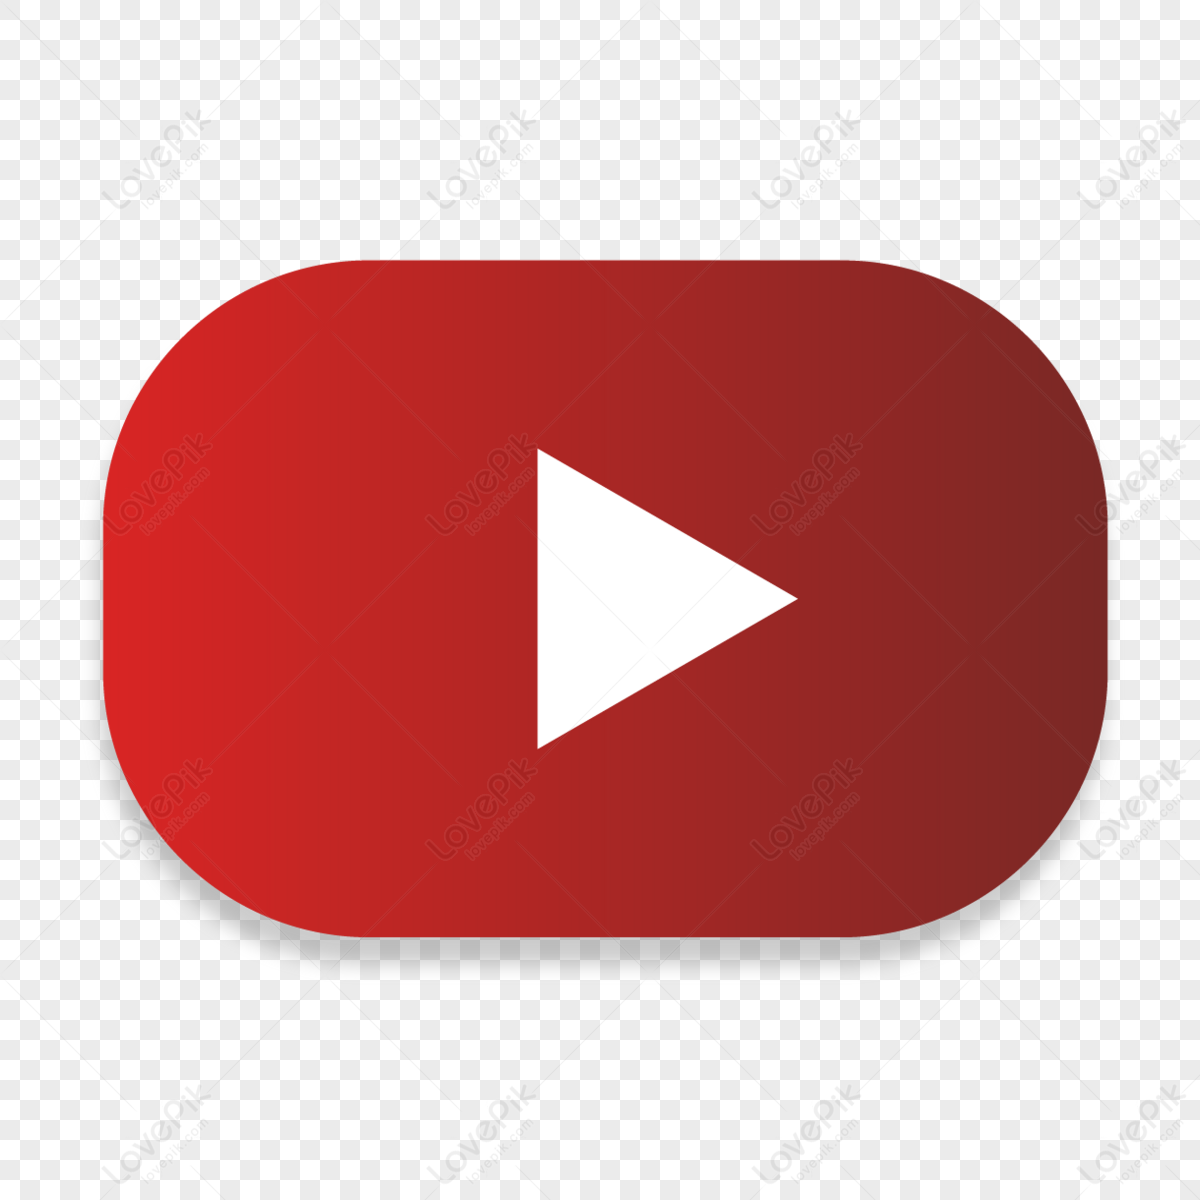 Chi phí cho quảng cáo trên YouTube là bao nhiêu? - Digital Learning